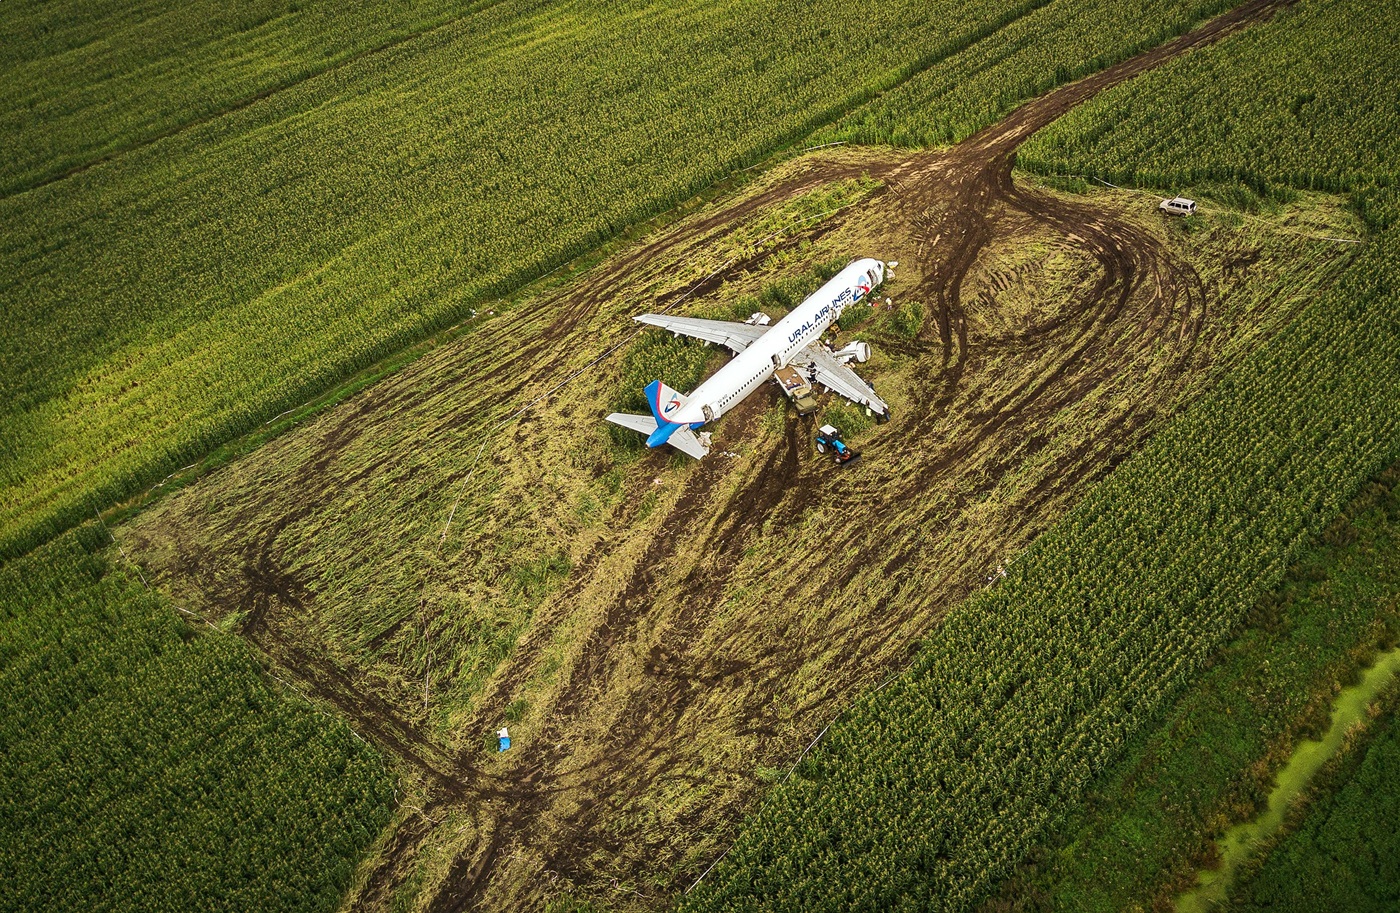 Андрей Колесников («Ъ»): «Главное политическое событие в России в 2019-м — самолет на кукурузном поле»